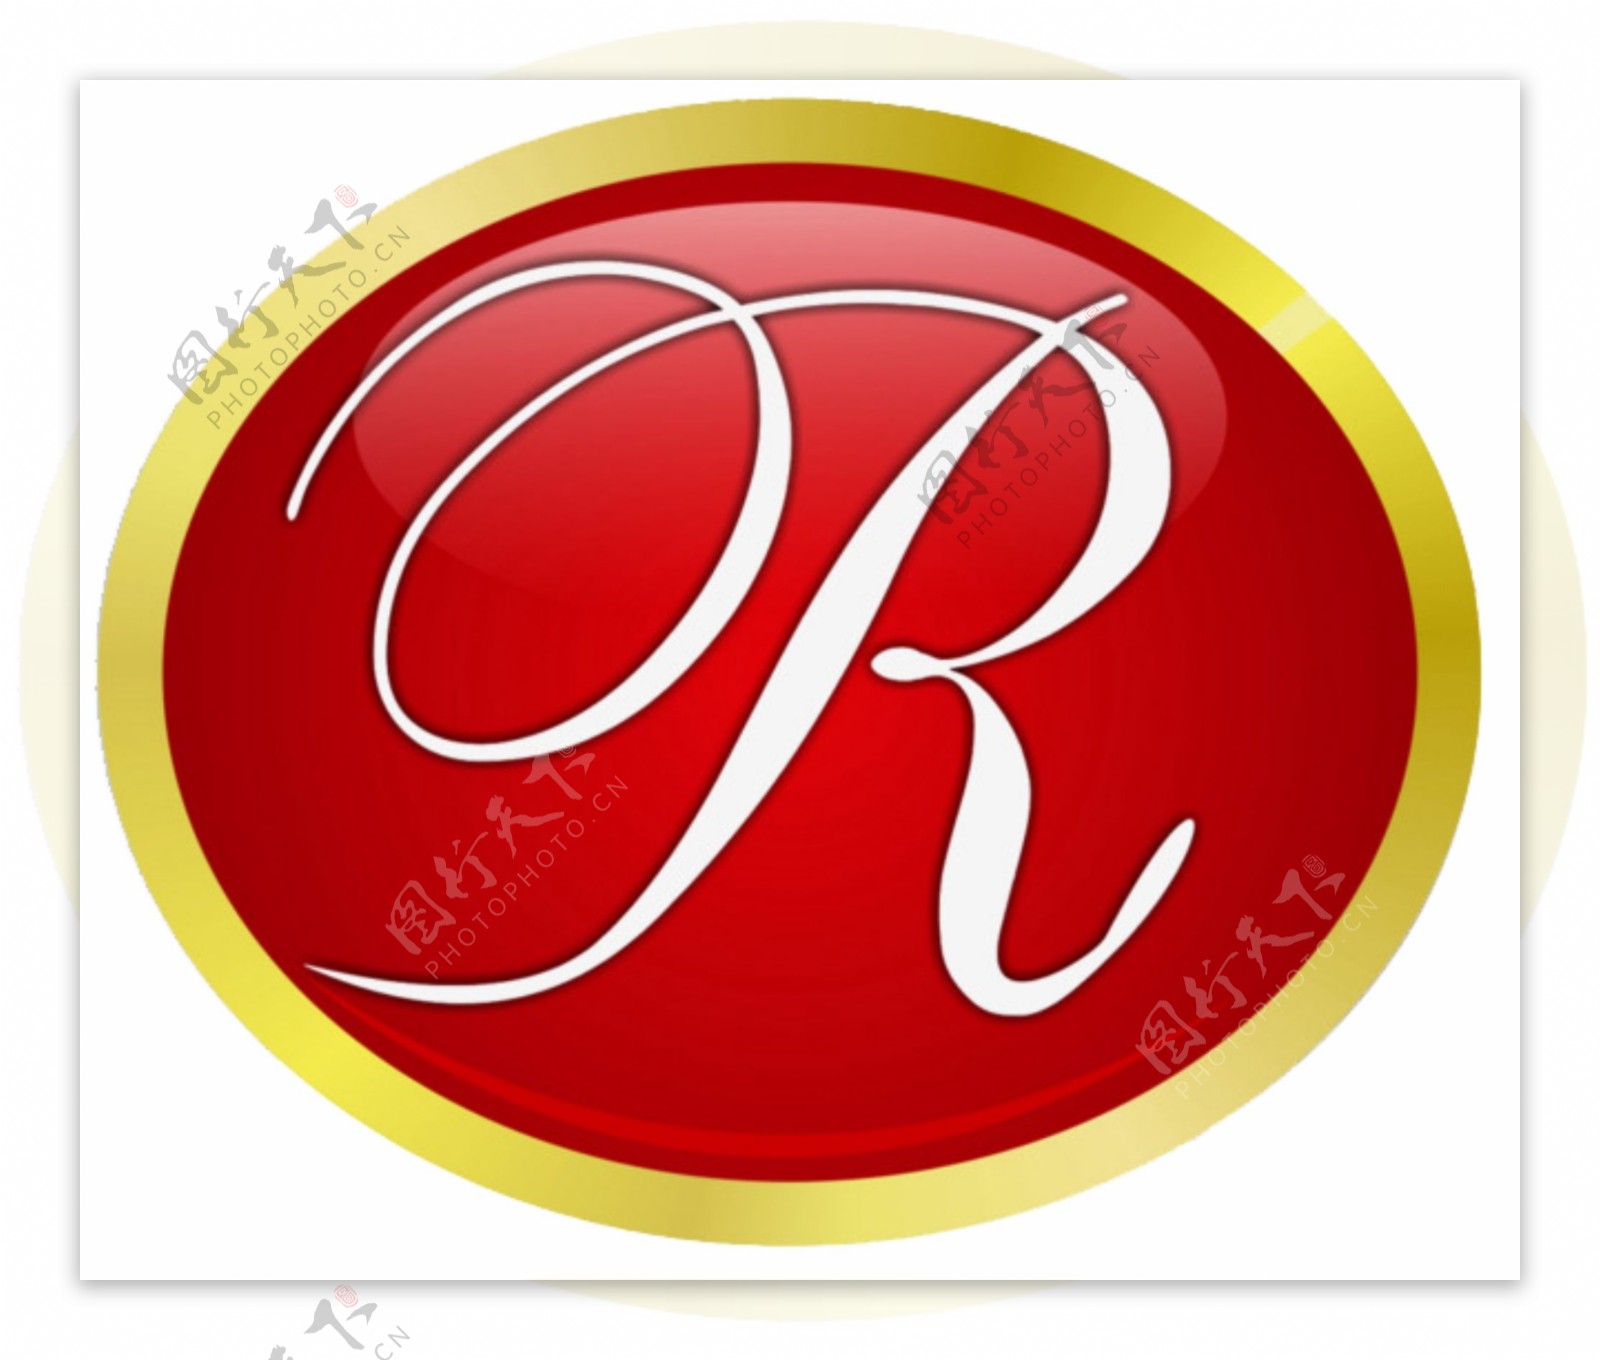 创意字母元素注册商标R素材装饰设计图案集合